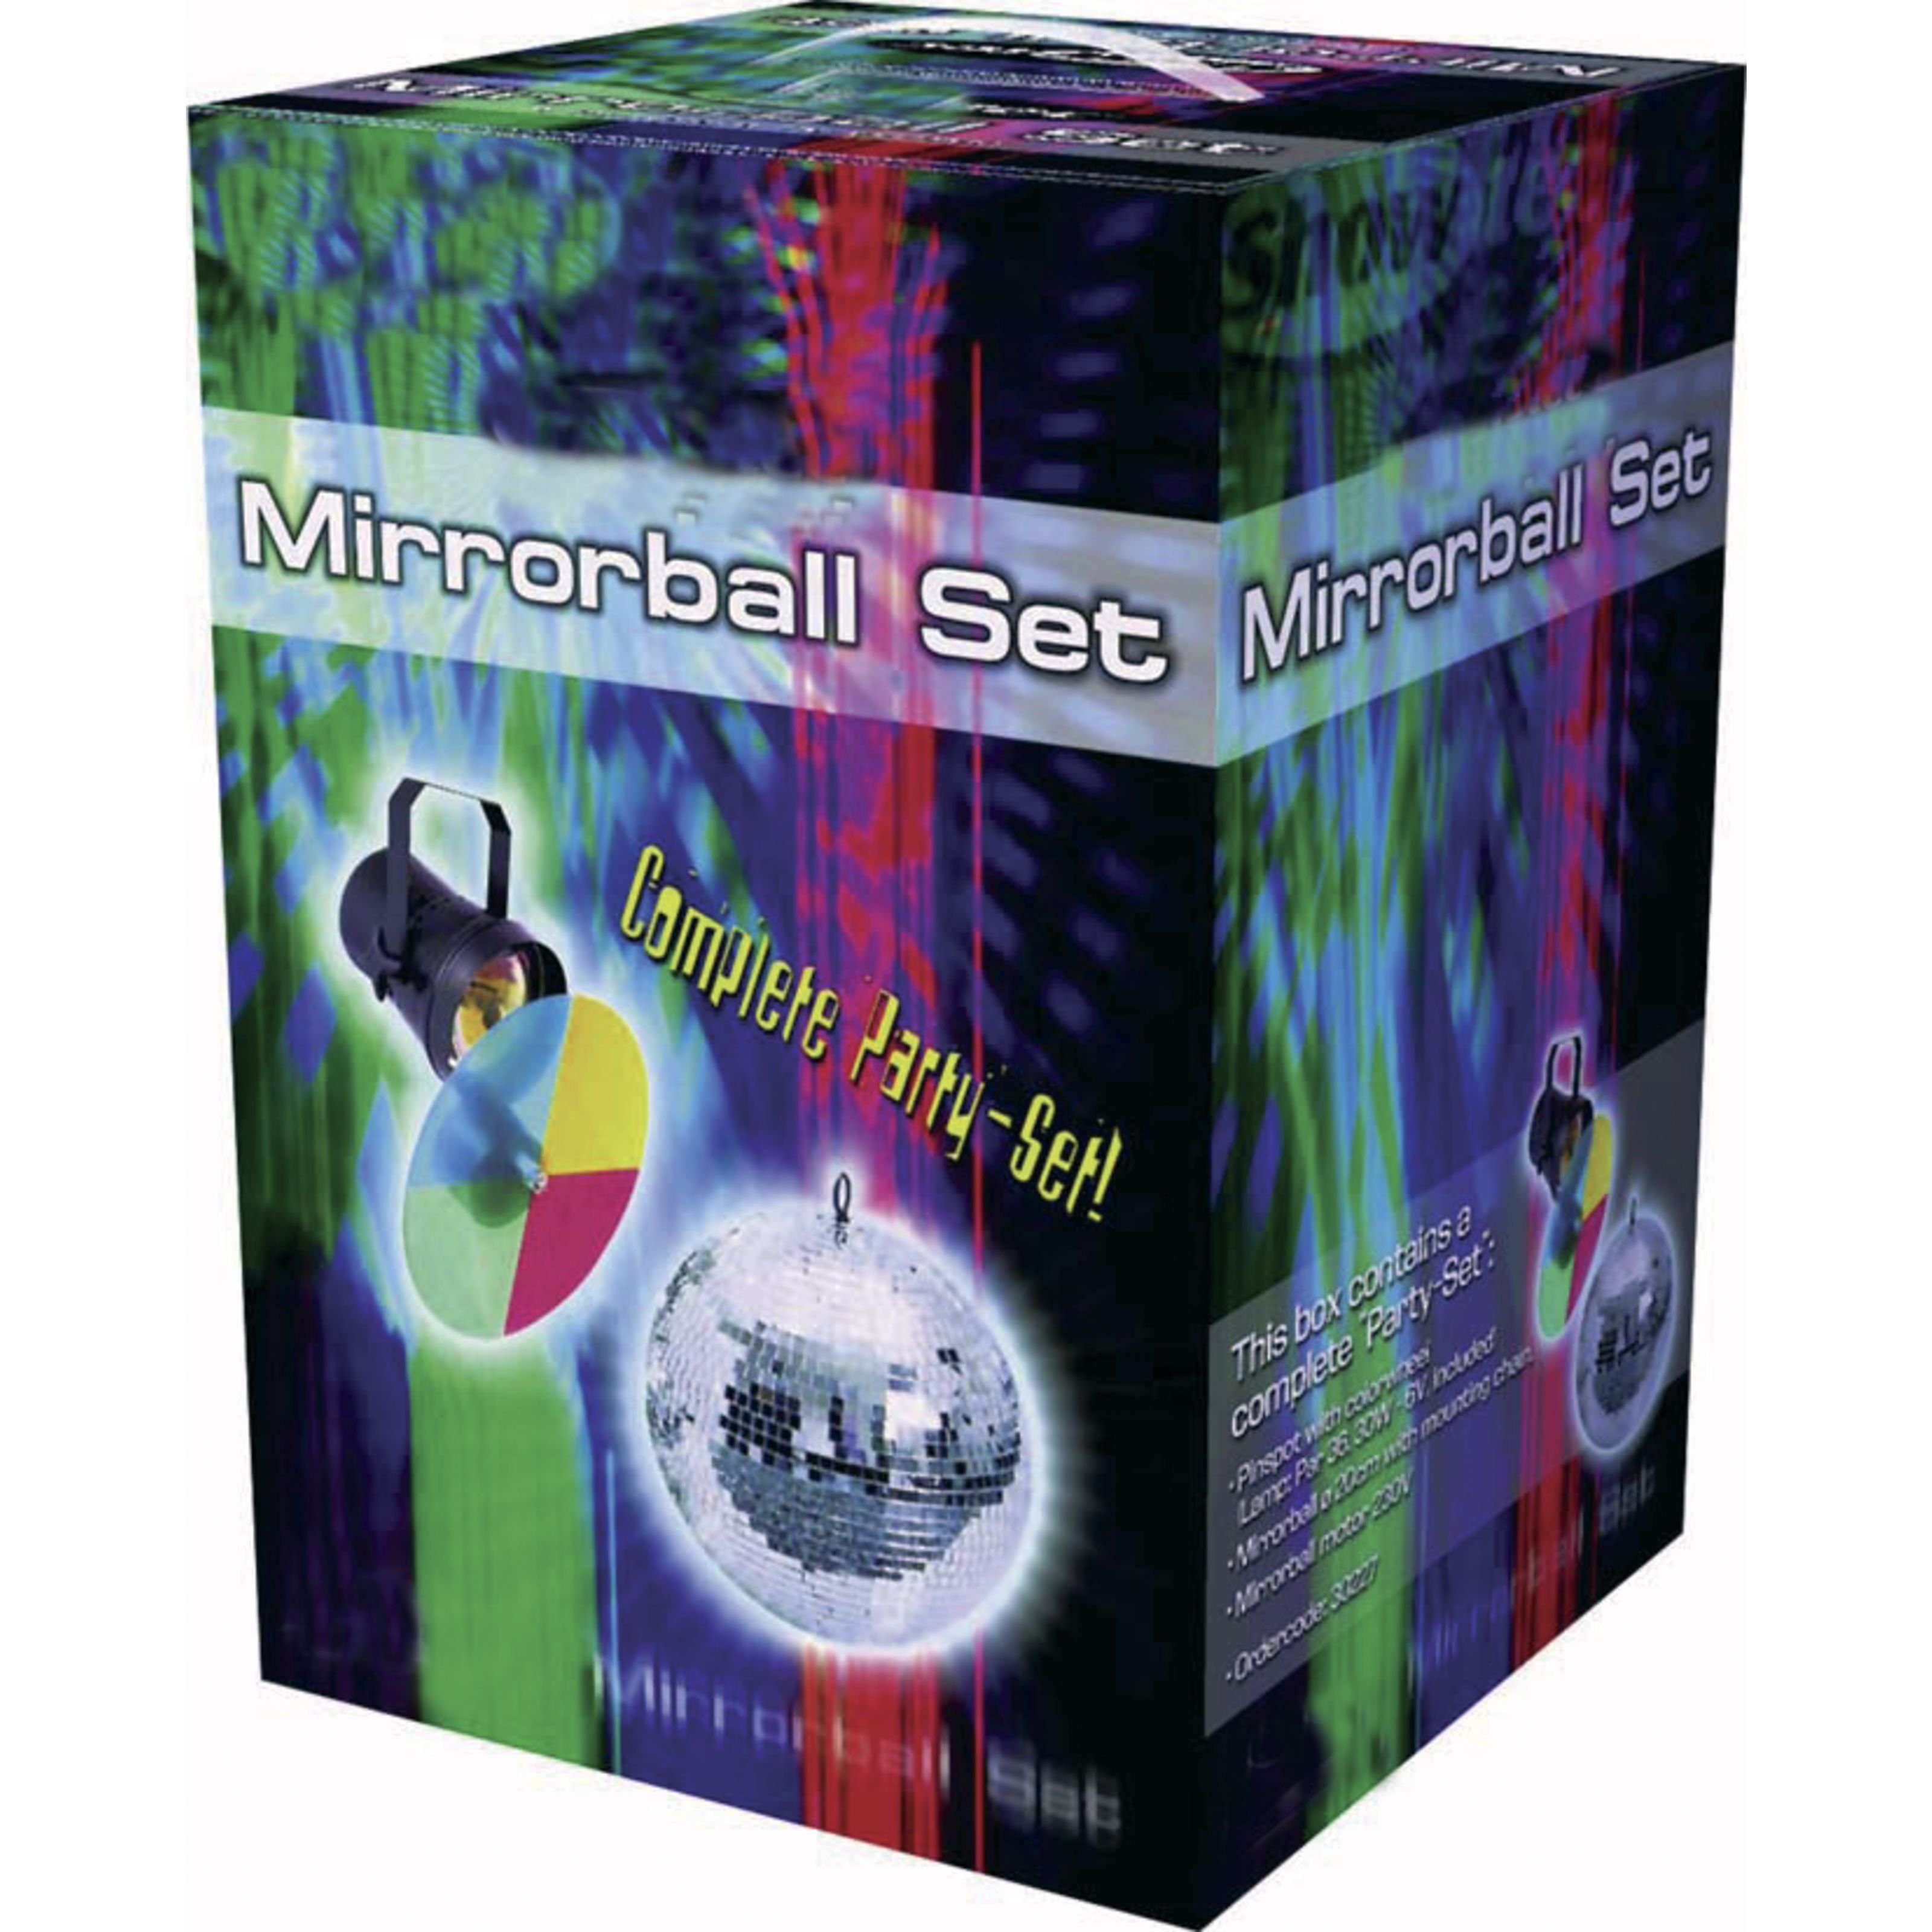 Lichtefekte Pinspot, Discolicht, Set Motor, Mirrorball 1 lightmaXX Set 20cm / Farbwechsler -